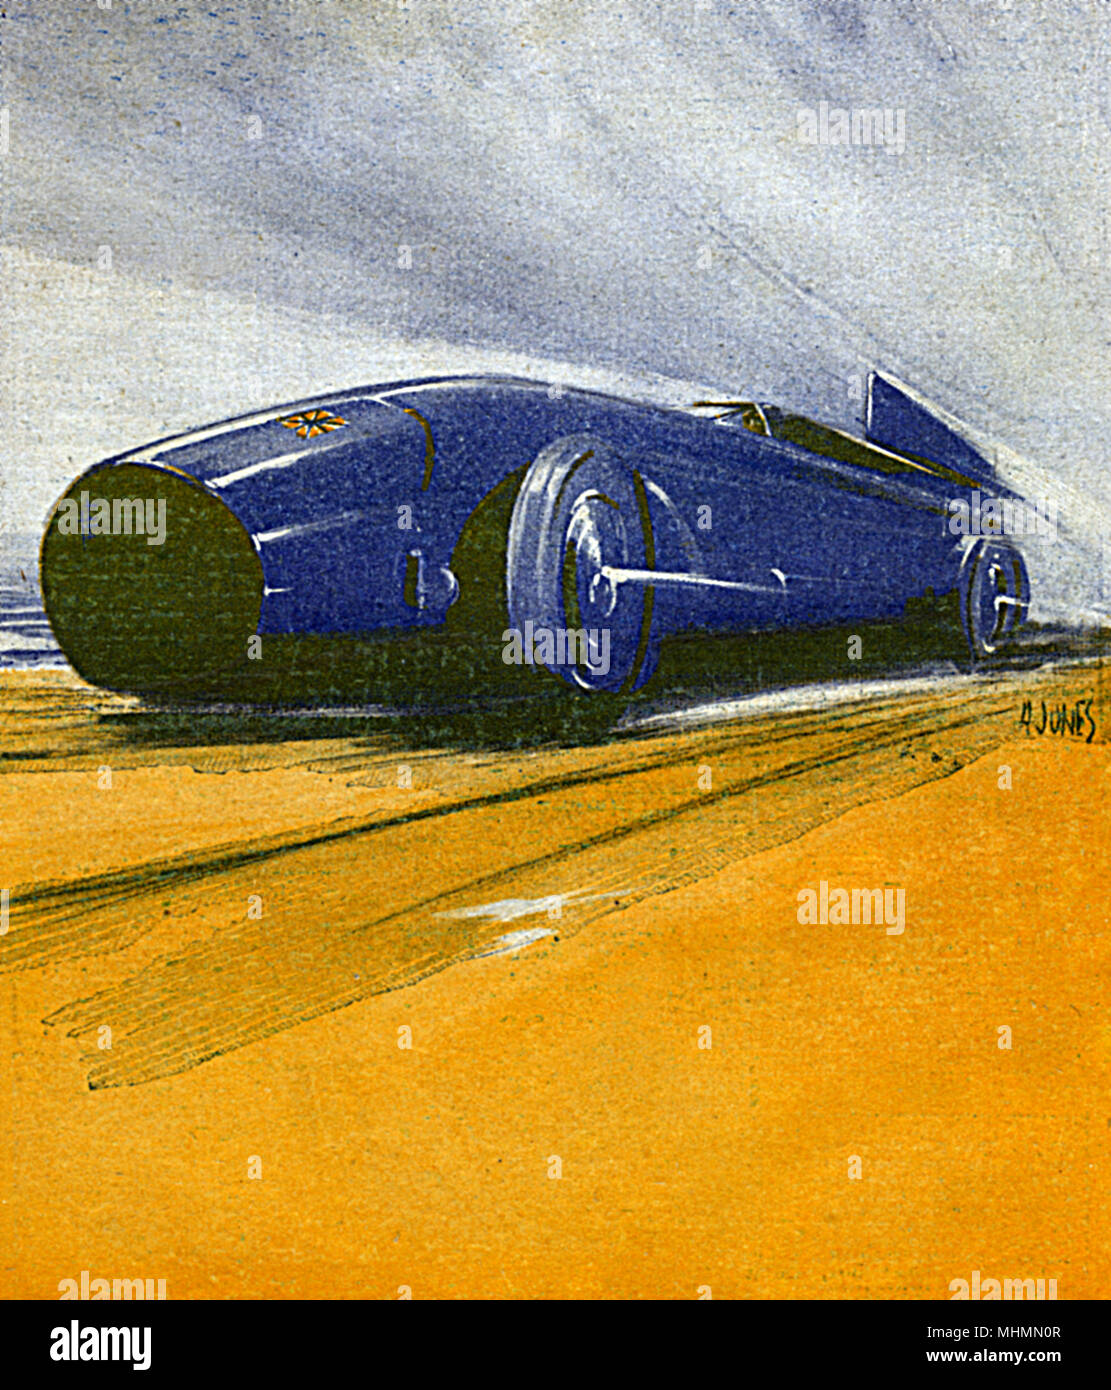 Sir Malcolm Campbell's Bluebird rompere il record di velocità su terra a Daytona Beach nel 1931. Data: 1932 Foto Stock